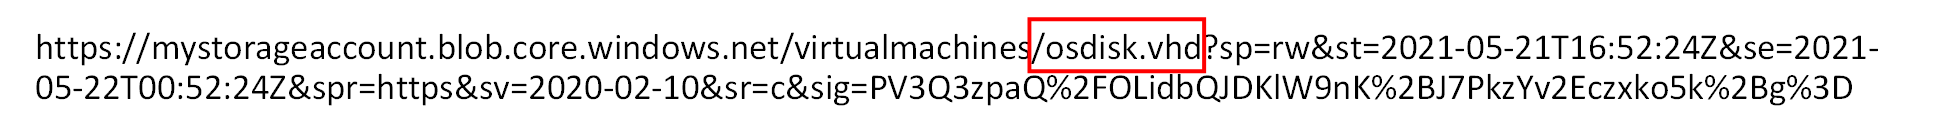 Afbeelding van een Blob SAS-URL-voorbeeld voor een VHD met de naam osdisk